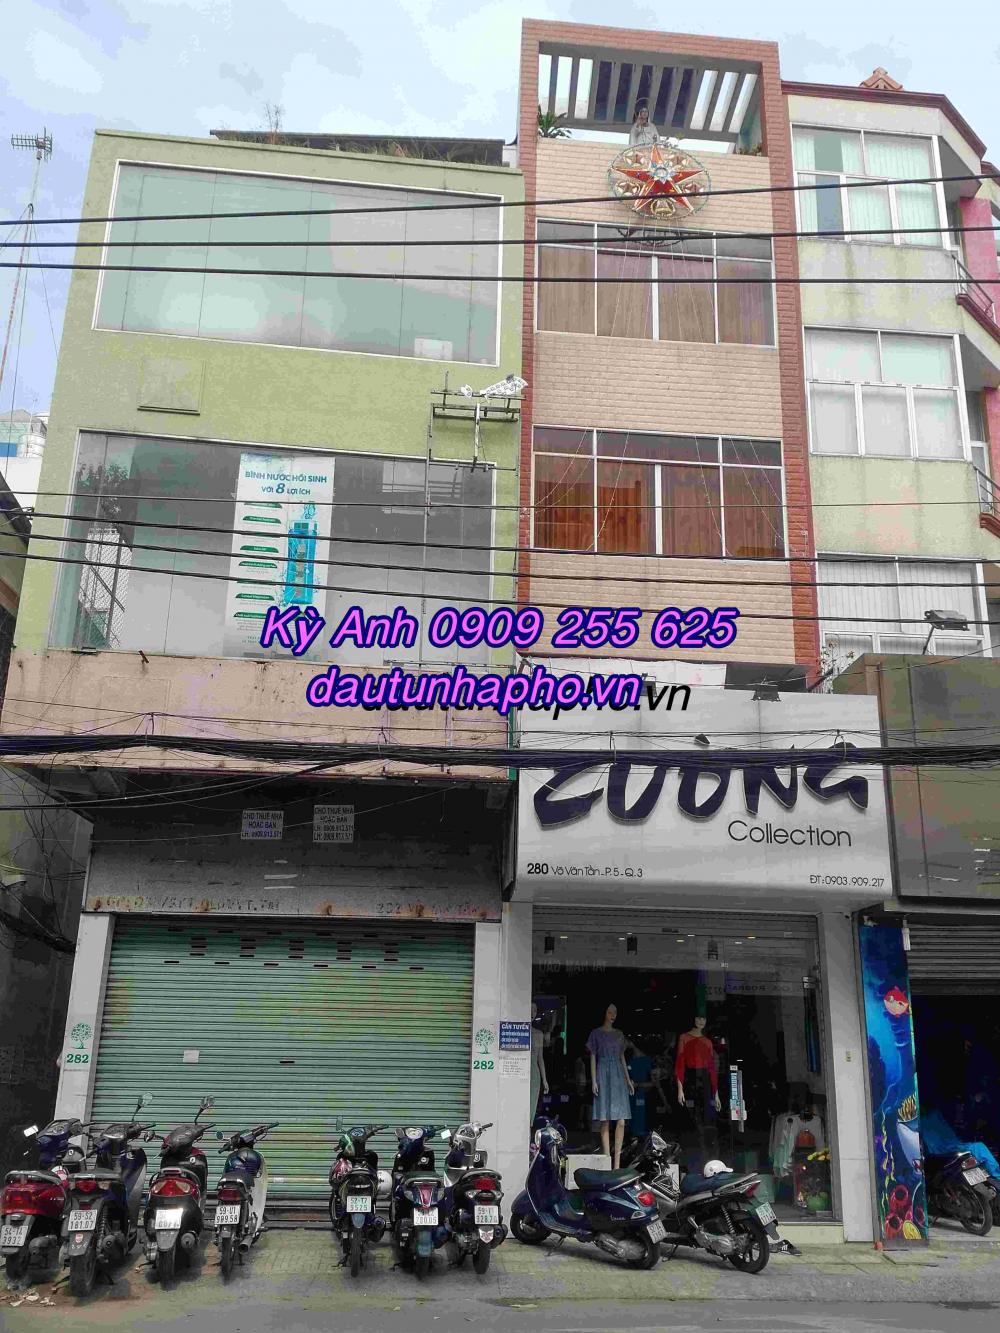 Cần bán nhà MT Phạm Ngọc Thạch, P. Bến Nghé, Quận 1, DT: 15.59x30.5m. Giá 250tỷ